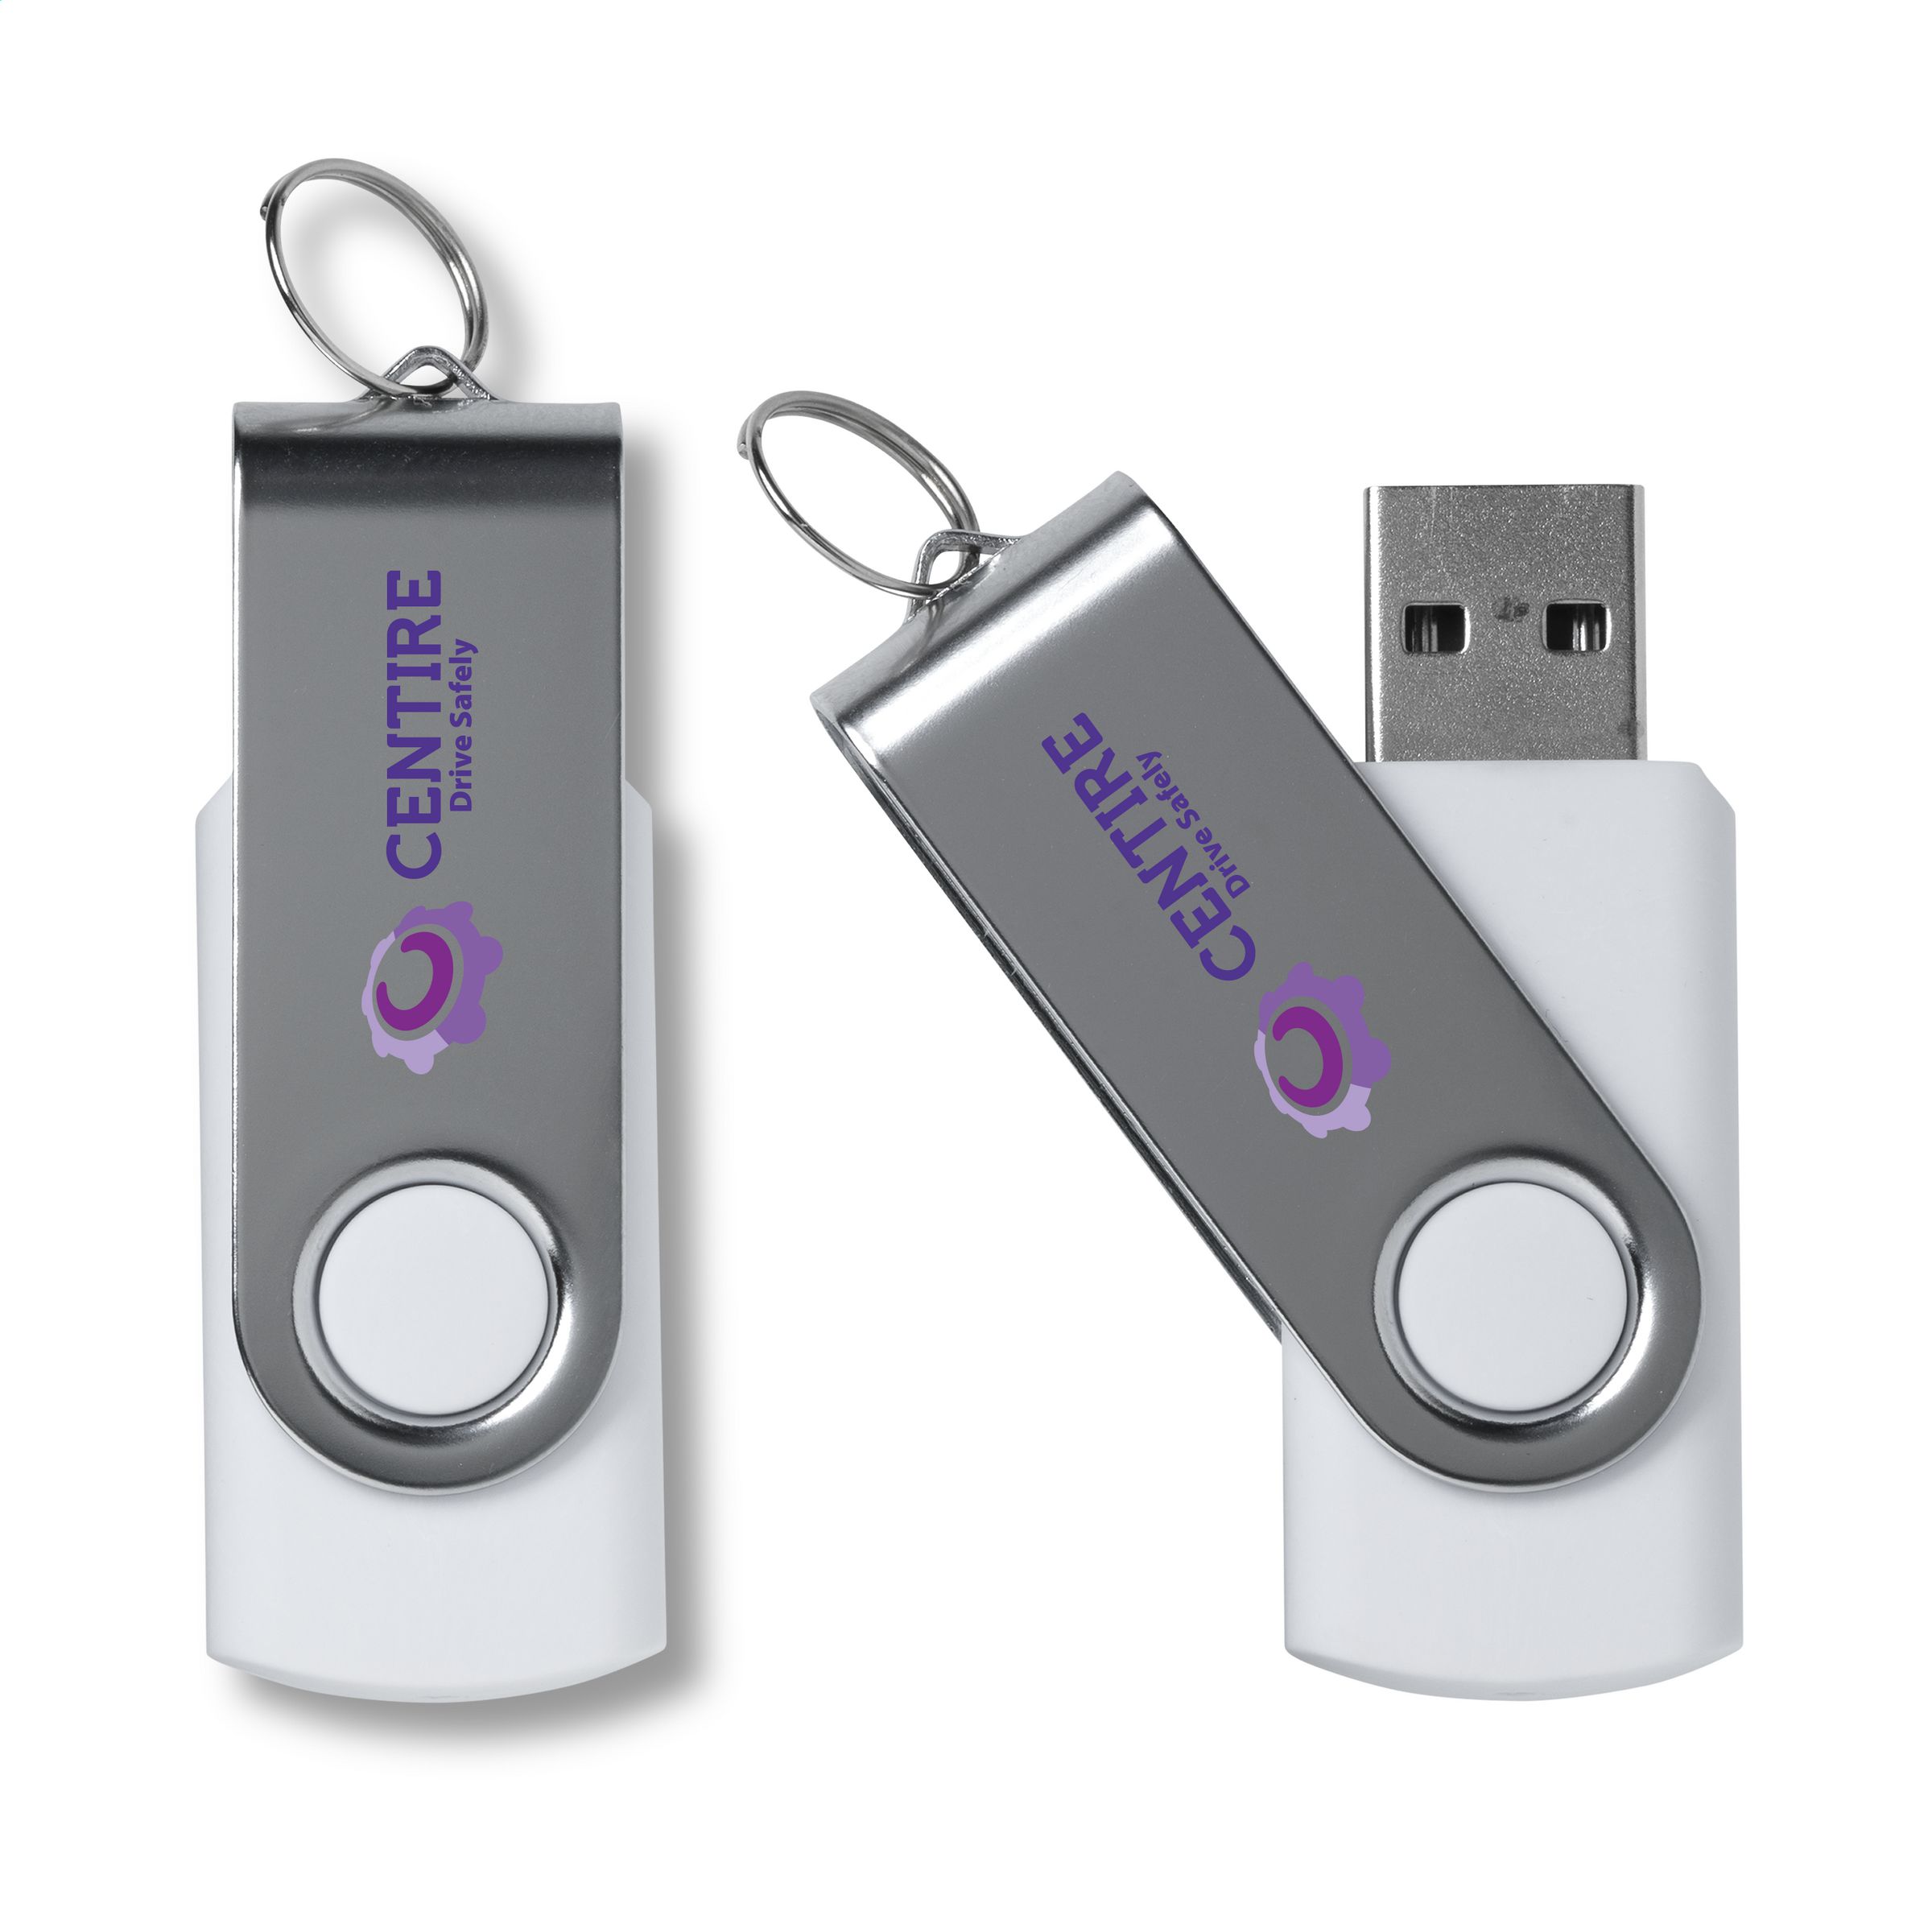 QuickData USB - Eichwalde